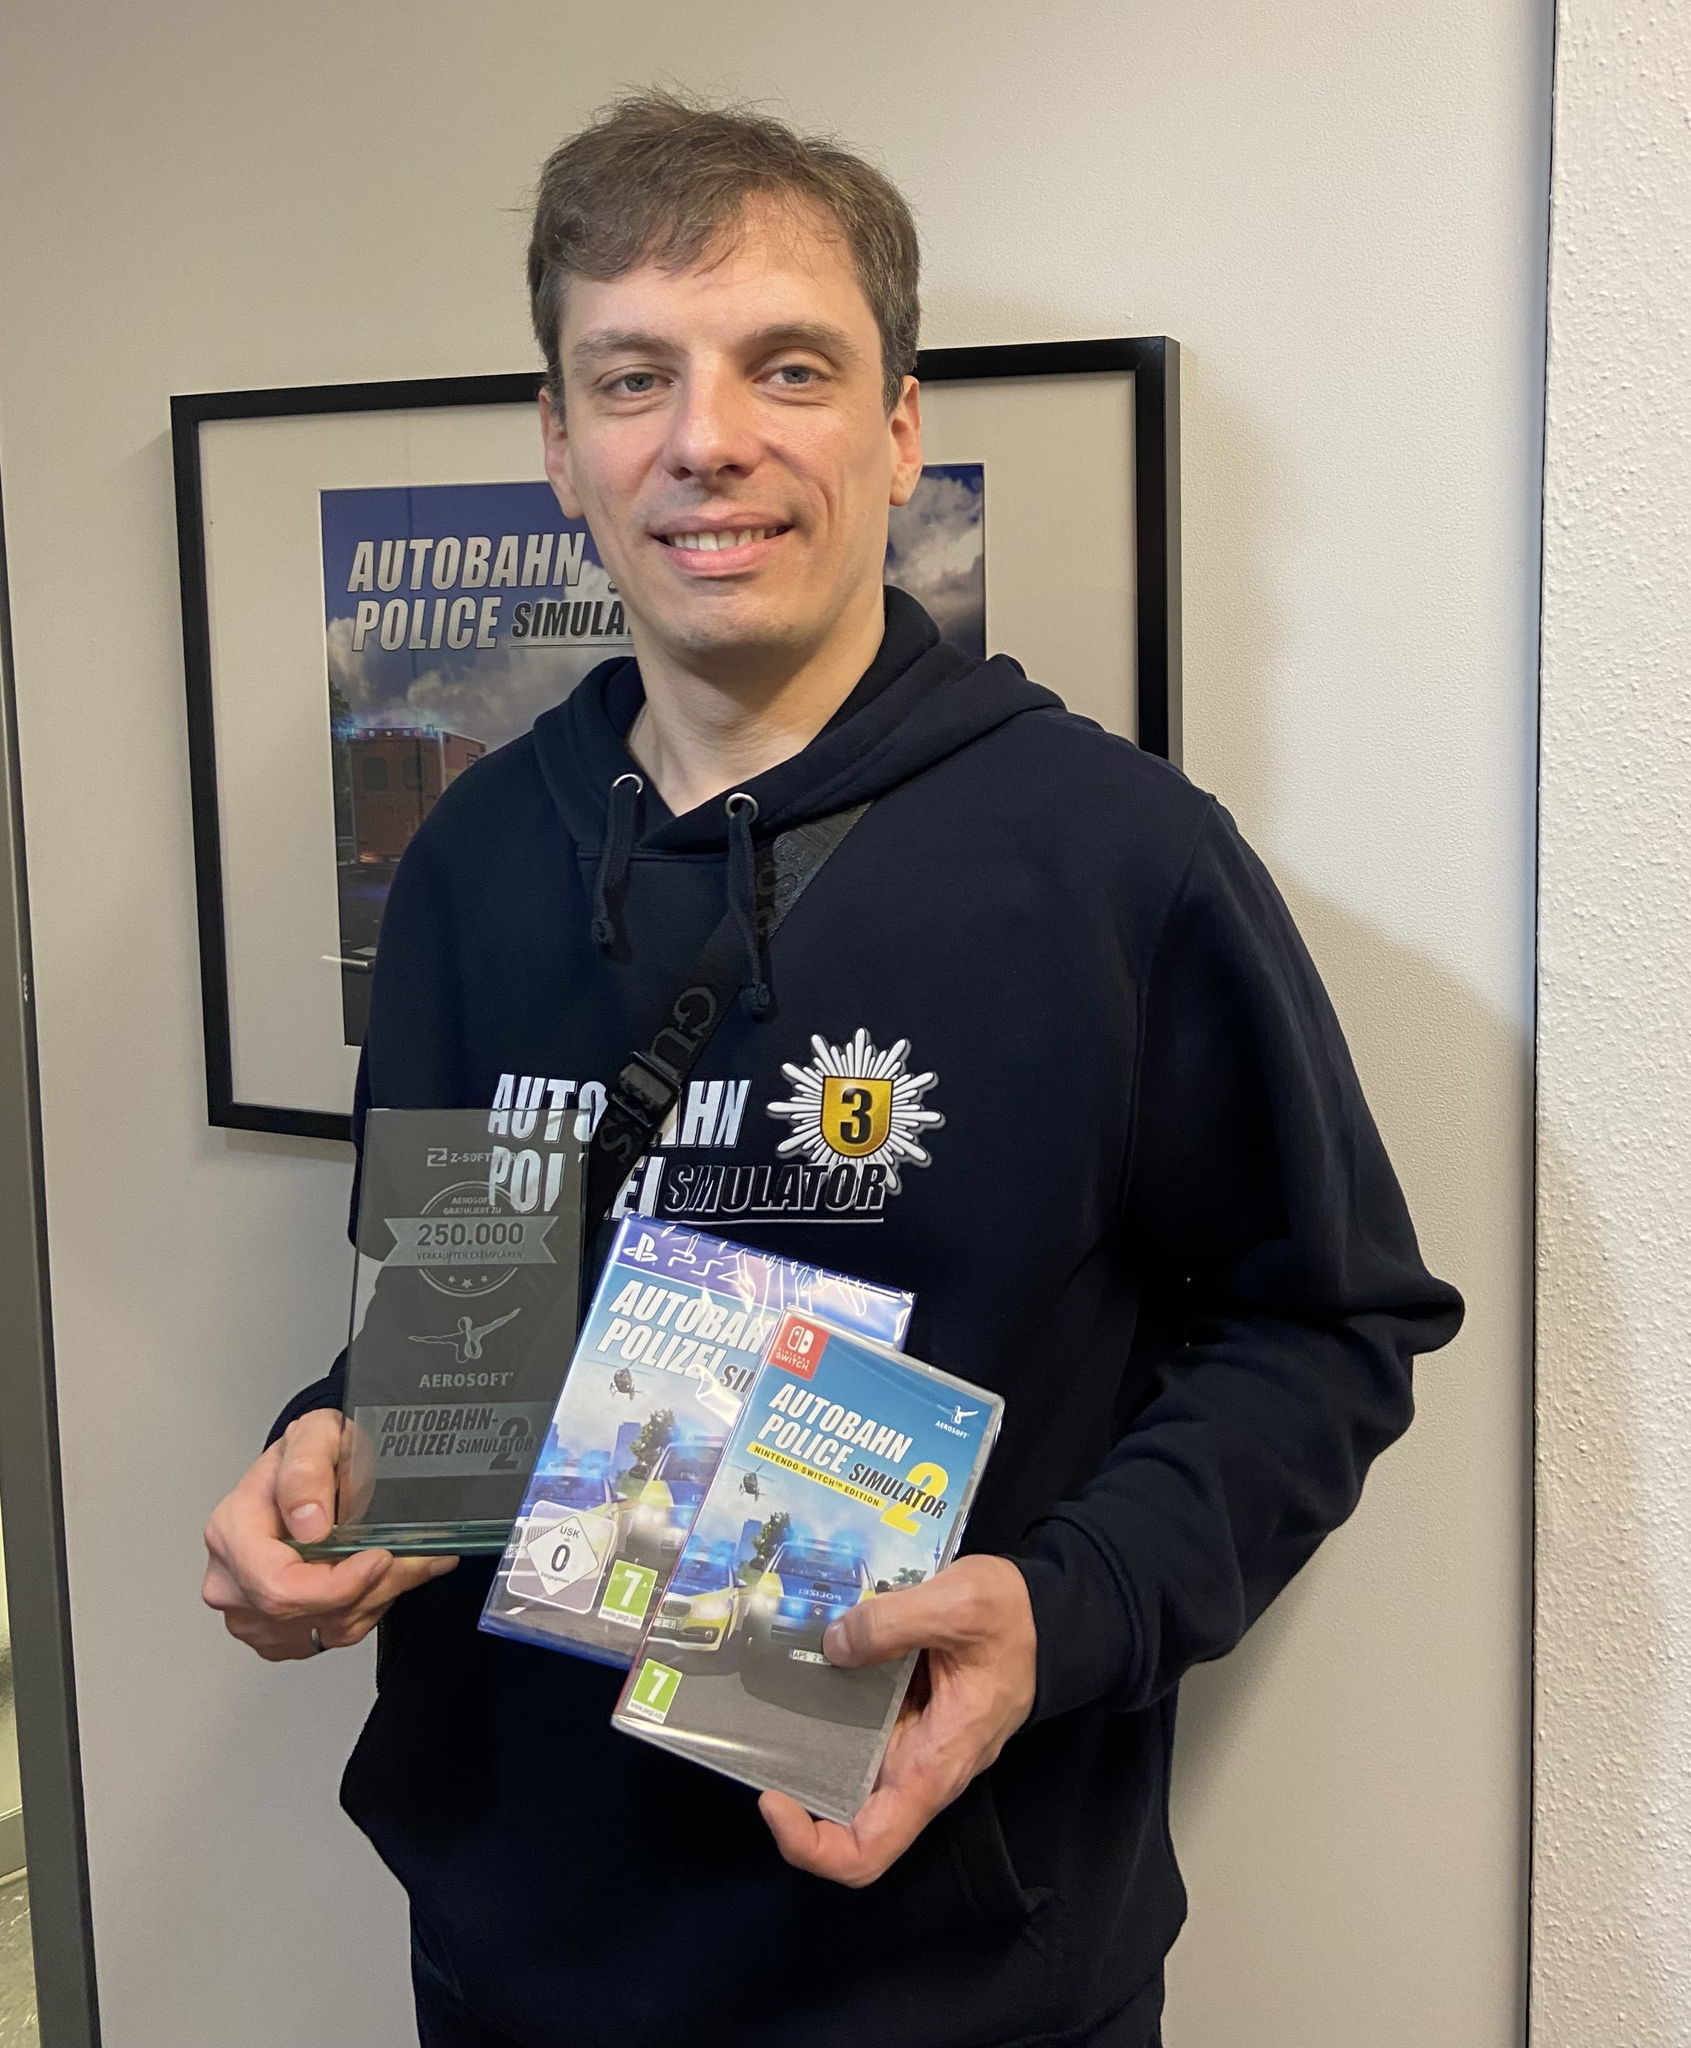 Andreas Heldt, CEO von Z-Software, mit dem Award für 250.000 verkaufte Exemplare von Autobahnpolizei Simulator 2.